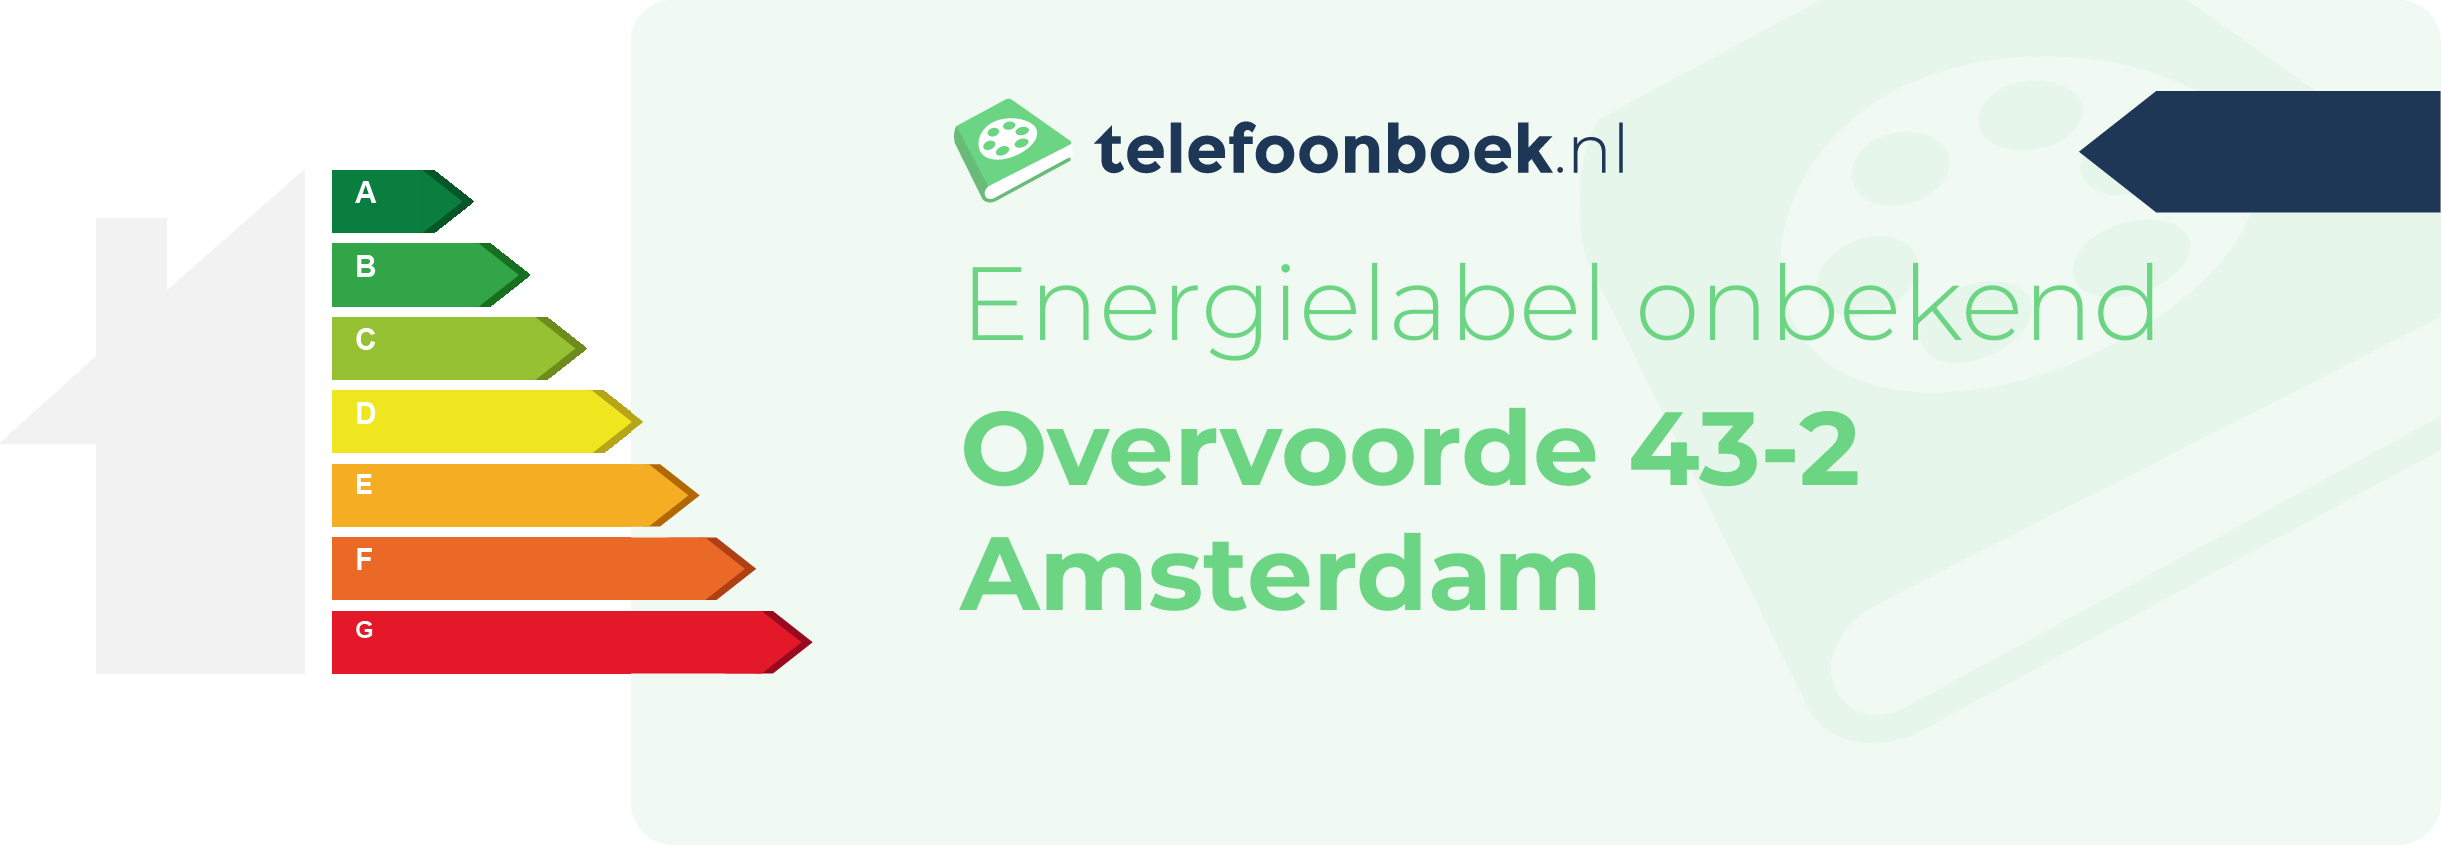 Energielabel Overvoorde 43-2 Amsterdam